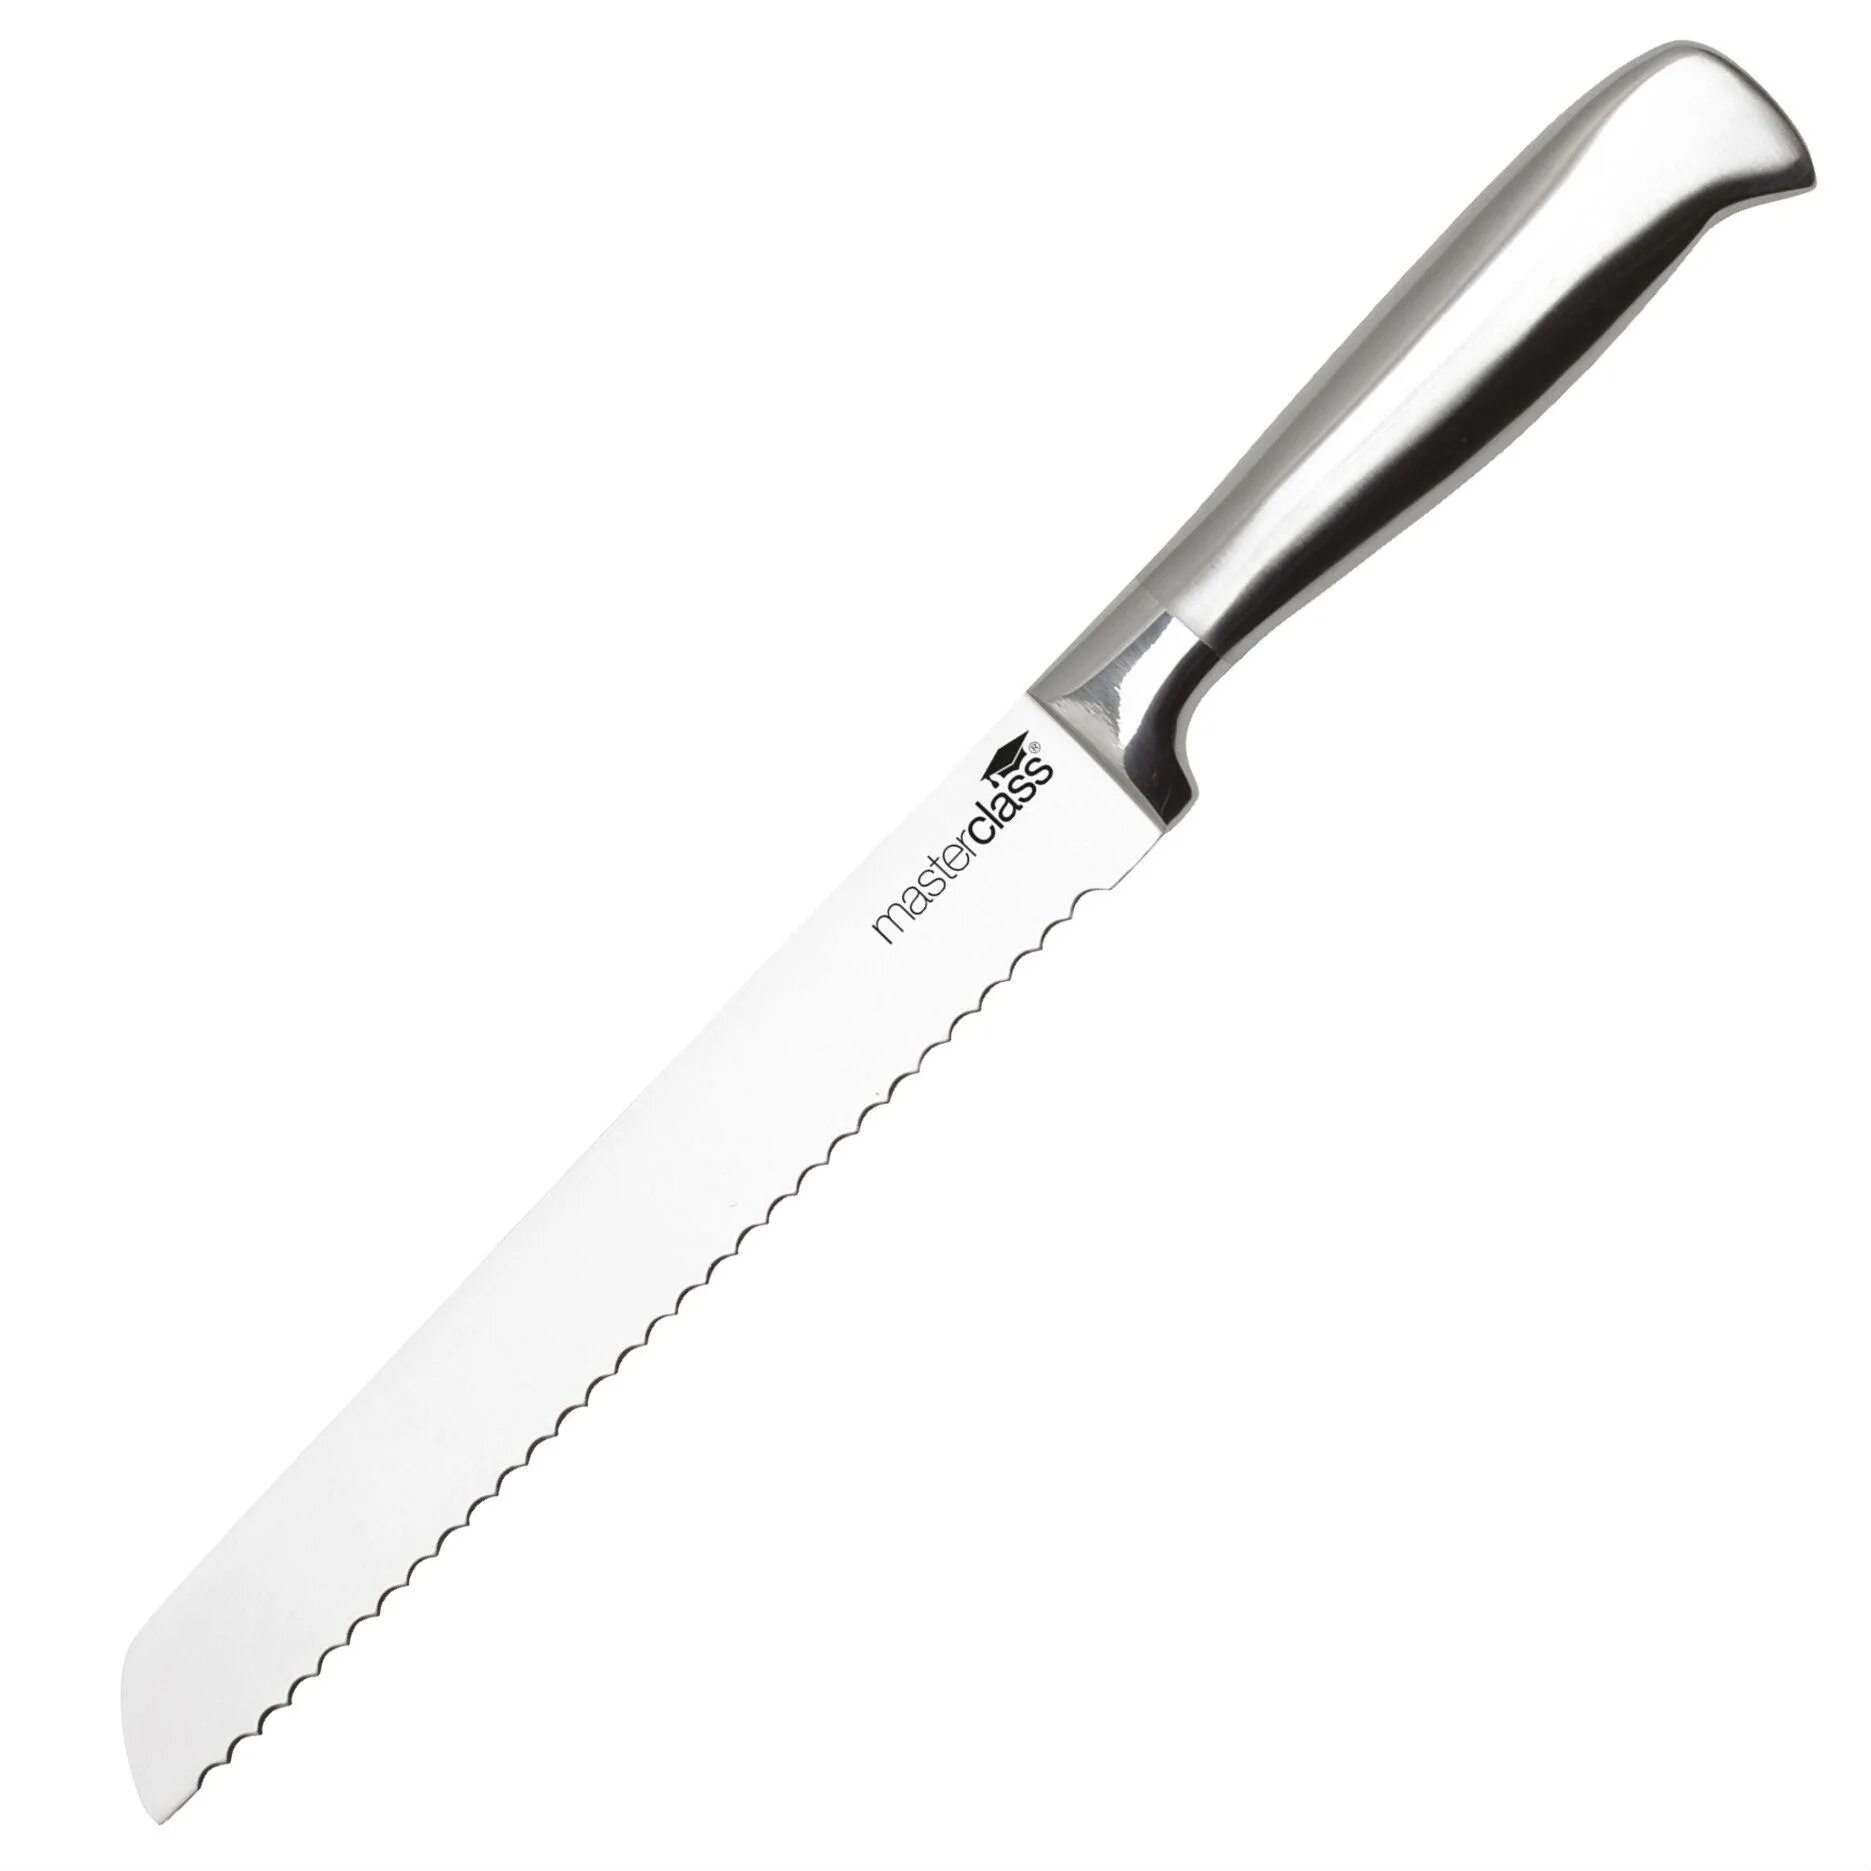 Кухонные ножи 20 см. Разделочный нож Vinzer 89311. Нож для хлеба Wenge 20 см. Нож волнистый для хлеба. Thomas нож для хлеба.